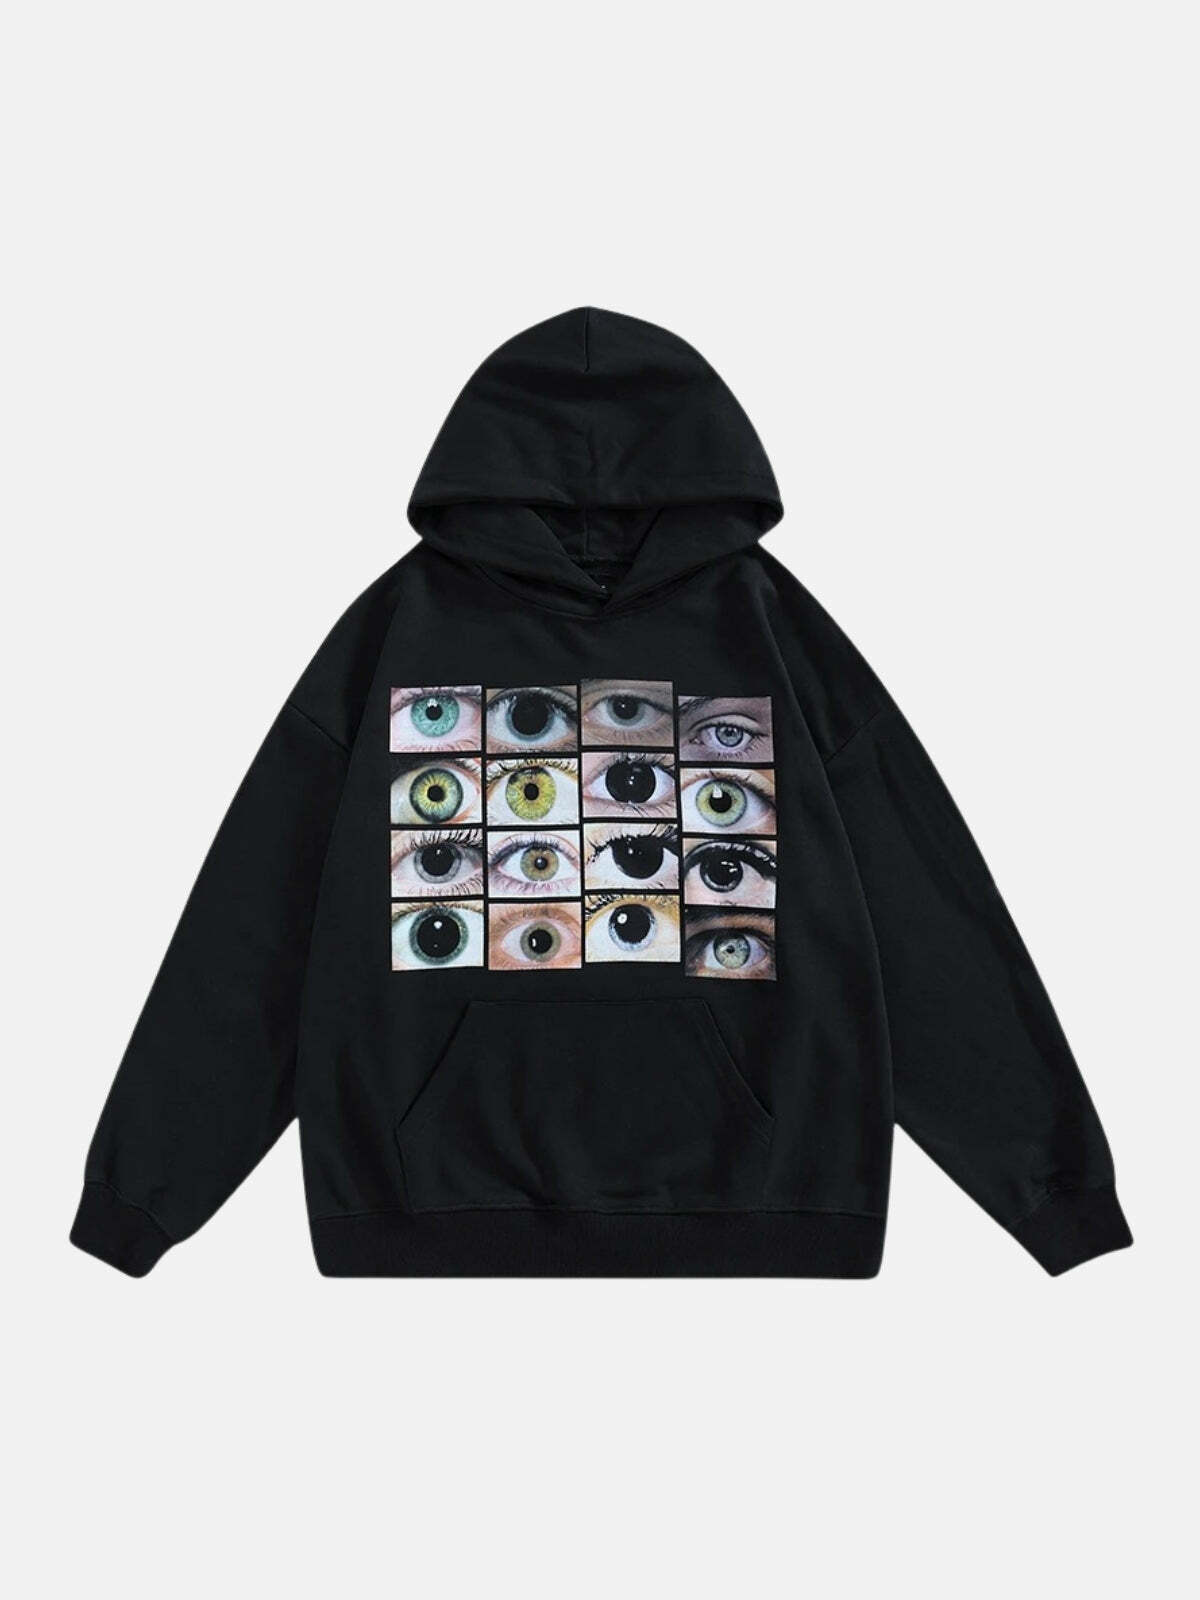 dynamic eyes print hoodie edgy streetwear 1032